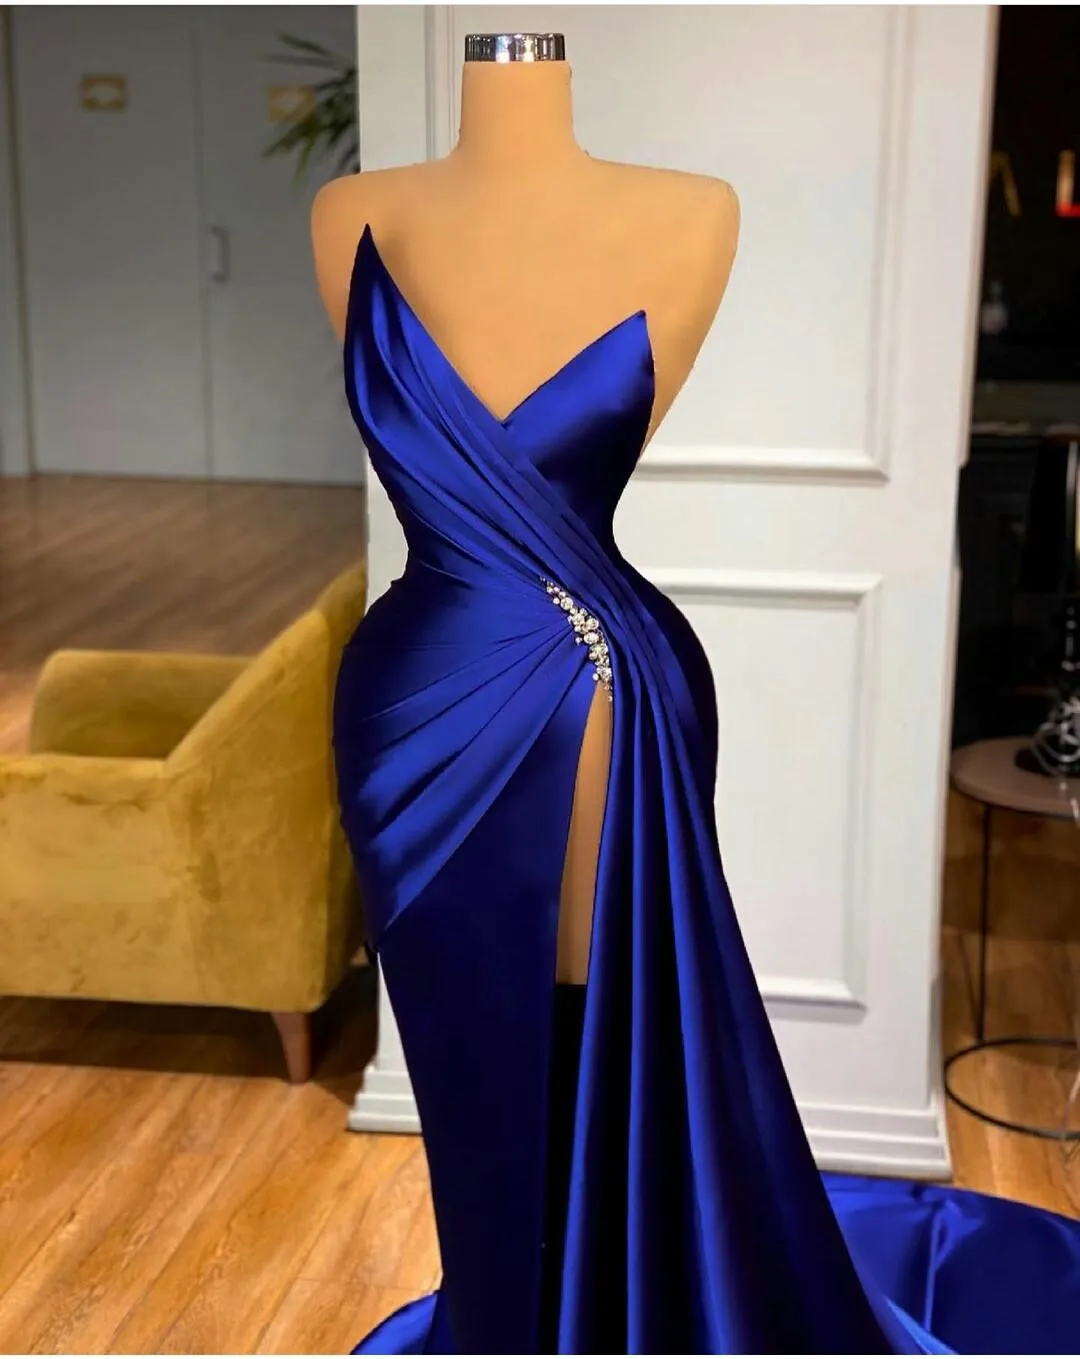 Robes de soirée bleu royal Designer 2021 sirène satin sans manches haute fente sur mesure plus taille occasion formelle porter arabe Cry267x